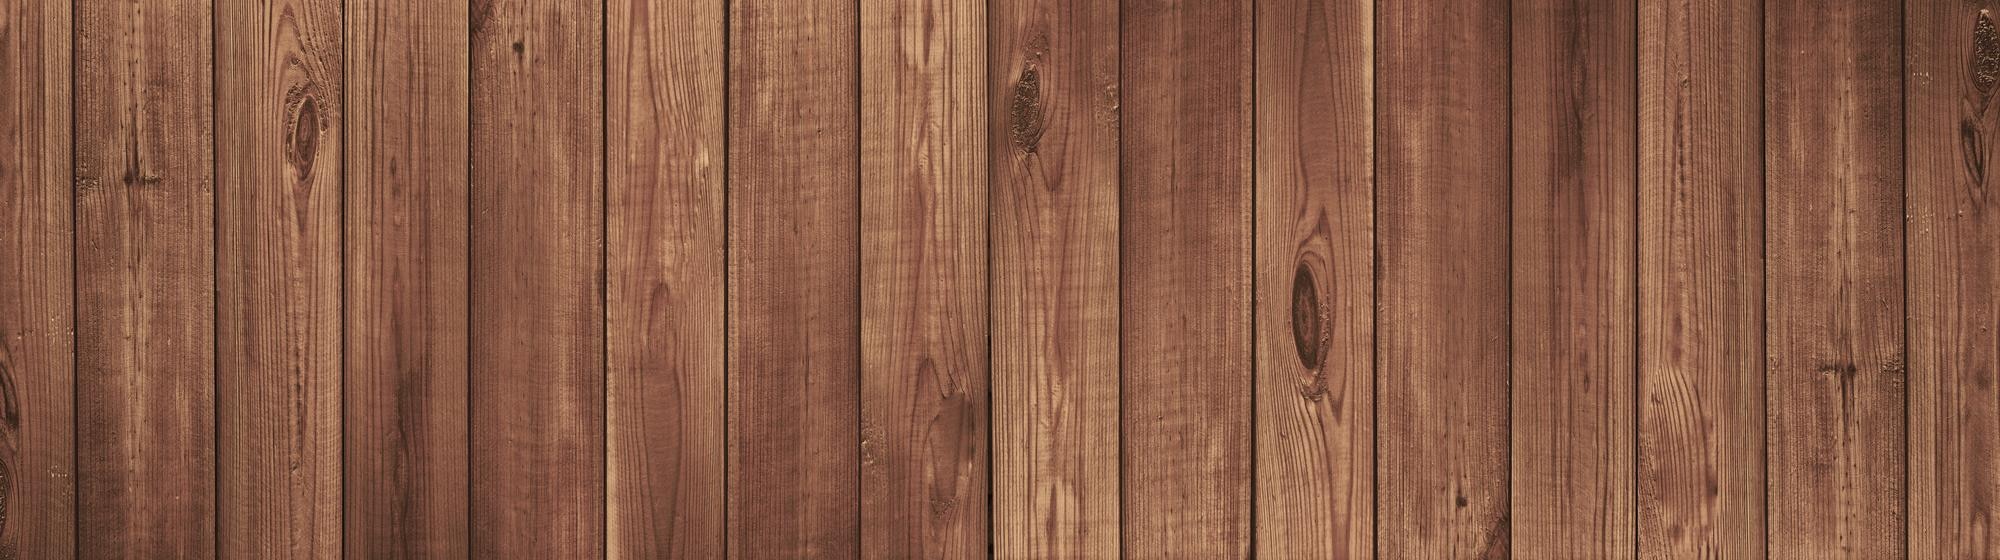 Vân gỗ nâu tự nhiên: Khám phá vân gỗ nâu tự nhiên là một trải nghiệm tuyệt vời để cảm nhận sự tự nhiên và mộc mạc. Đường nét tinh tế và vân gỗ nâu đan xen vào nhau tạo nên một sản phẩm đẹp tuyệt vời.